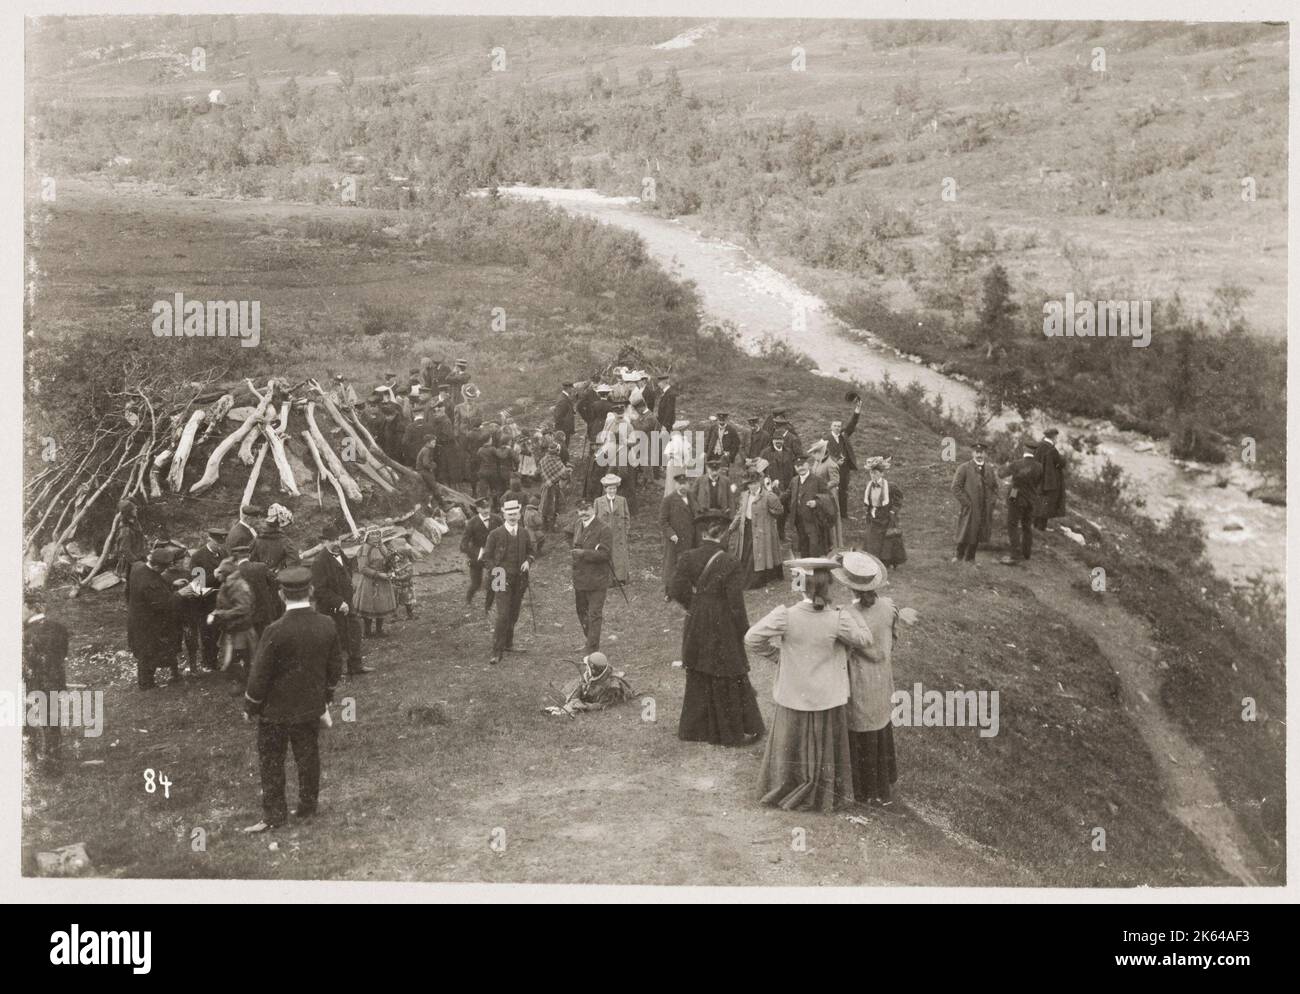 Photographie vintage c.1900 : visite touristique à la ferme sami, probablement en Norvège. Banque D'Images